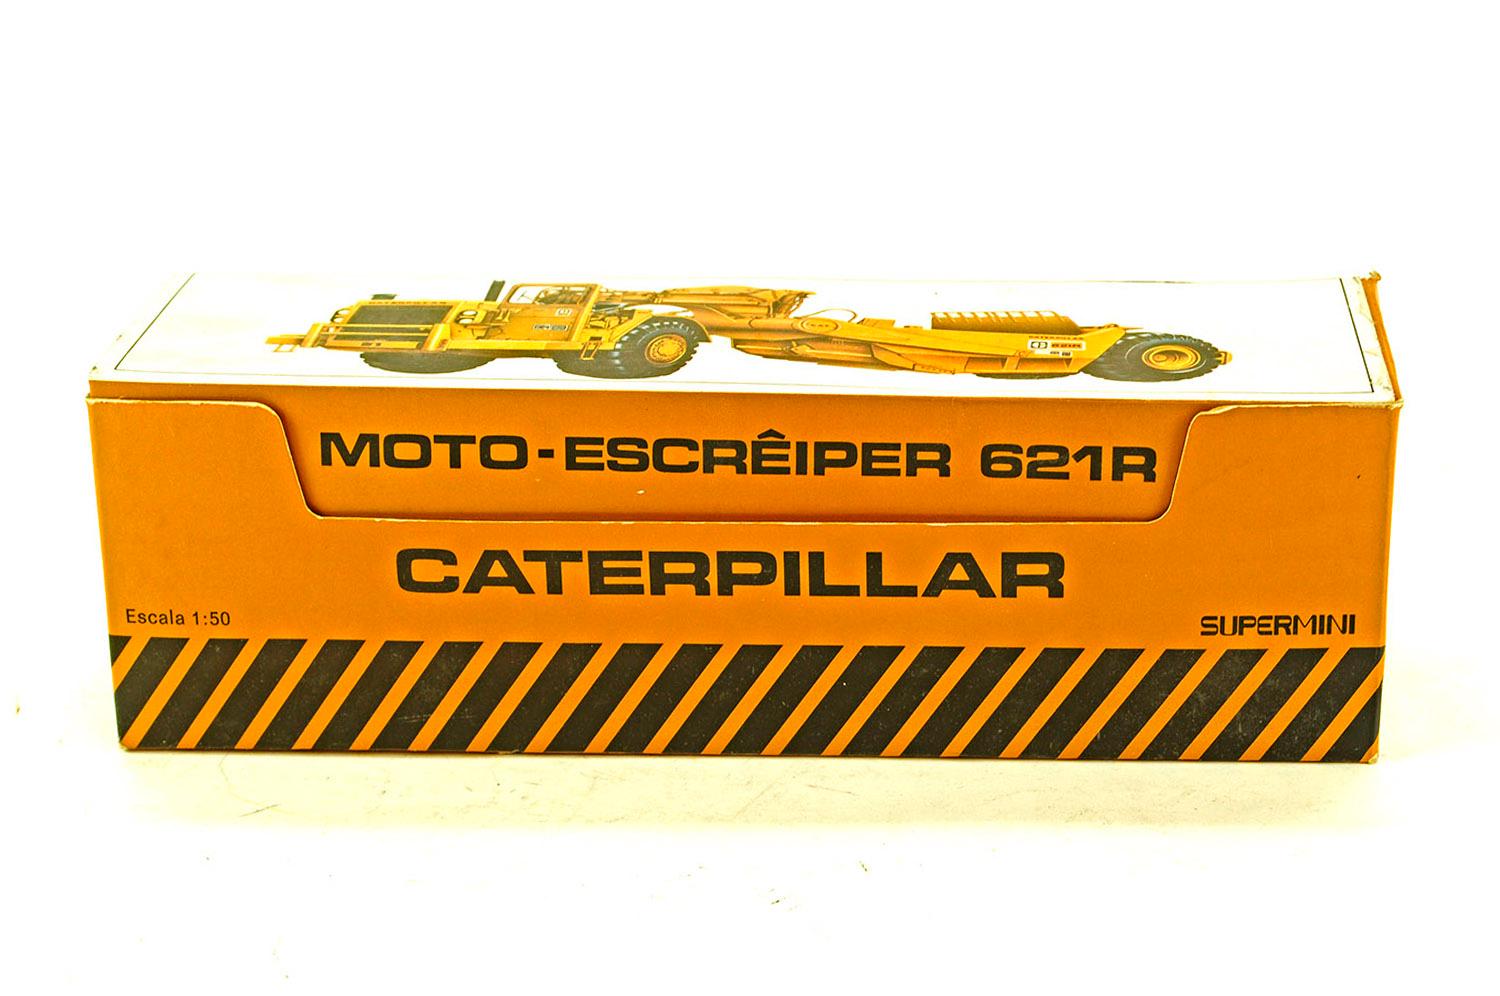 Caterpillar 621R Scraper